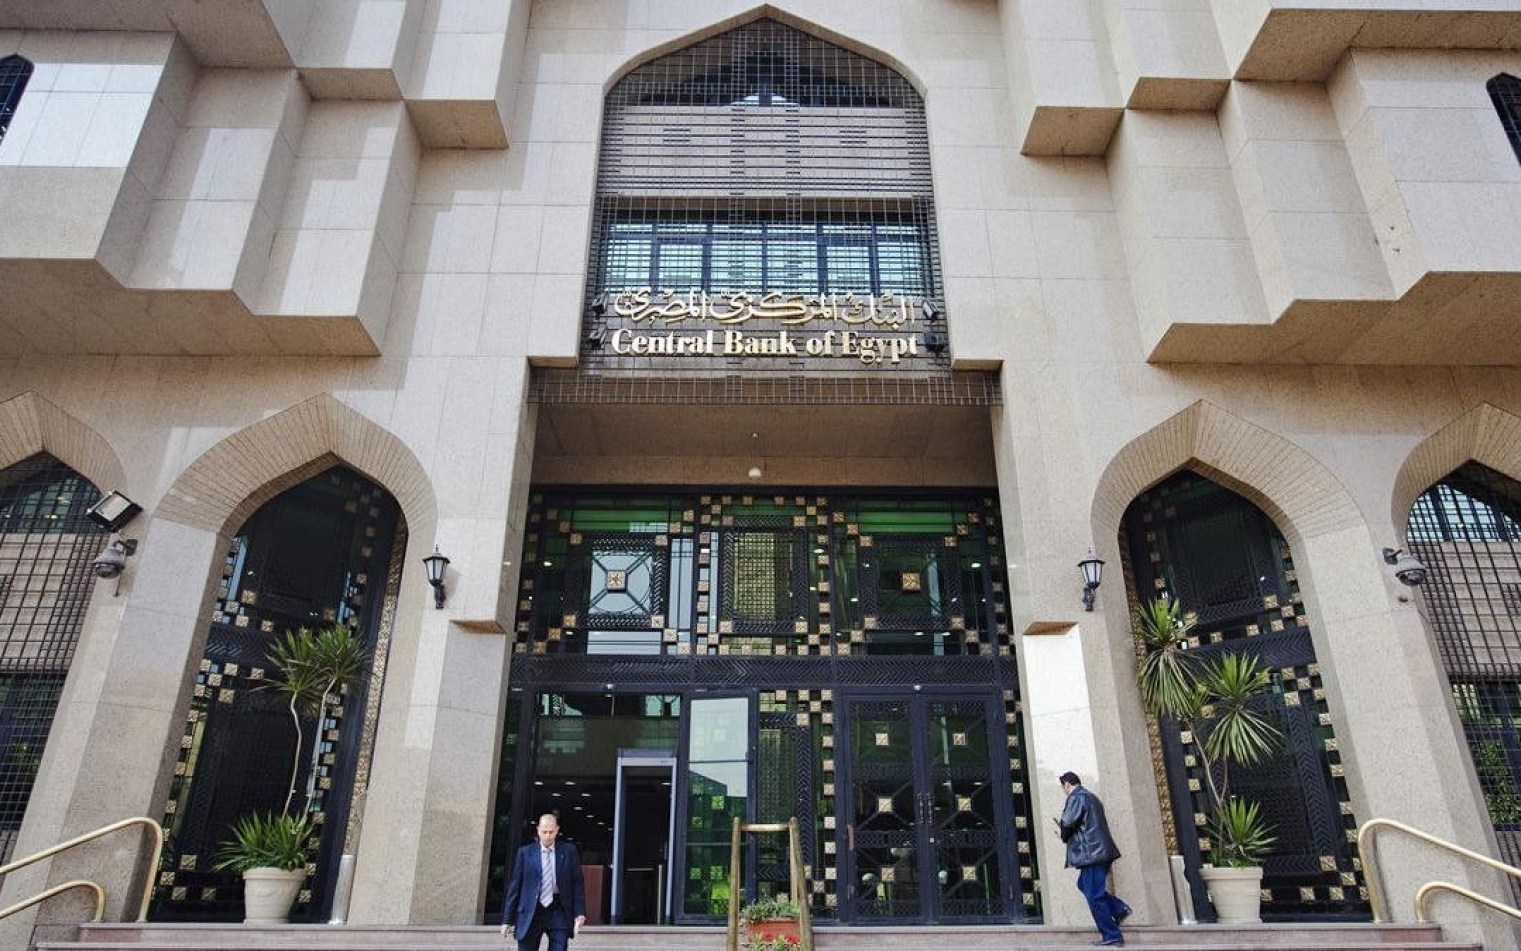 البنك المركزي يقرر تعطيل العمل بالبنوك 6 أيام بمناسبة عيد الفطر وعيد تحرير سيناء